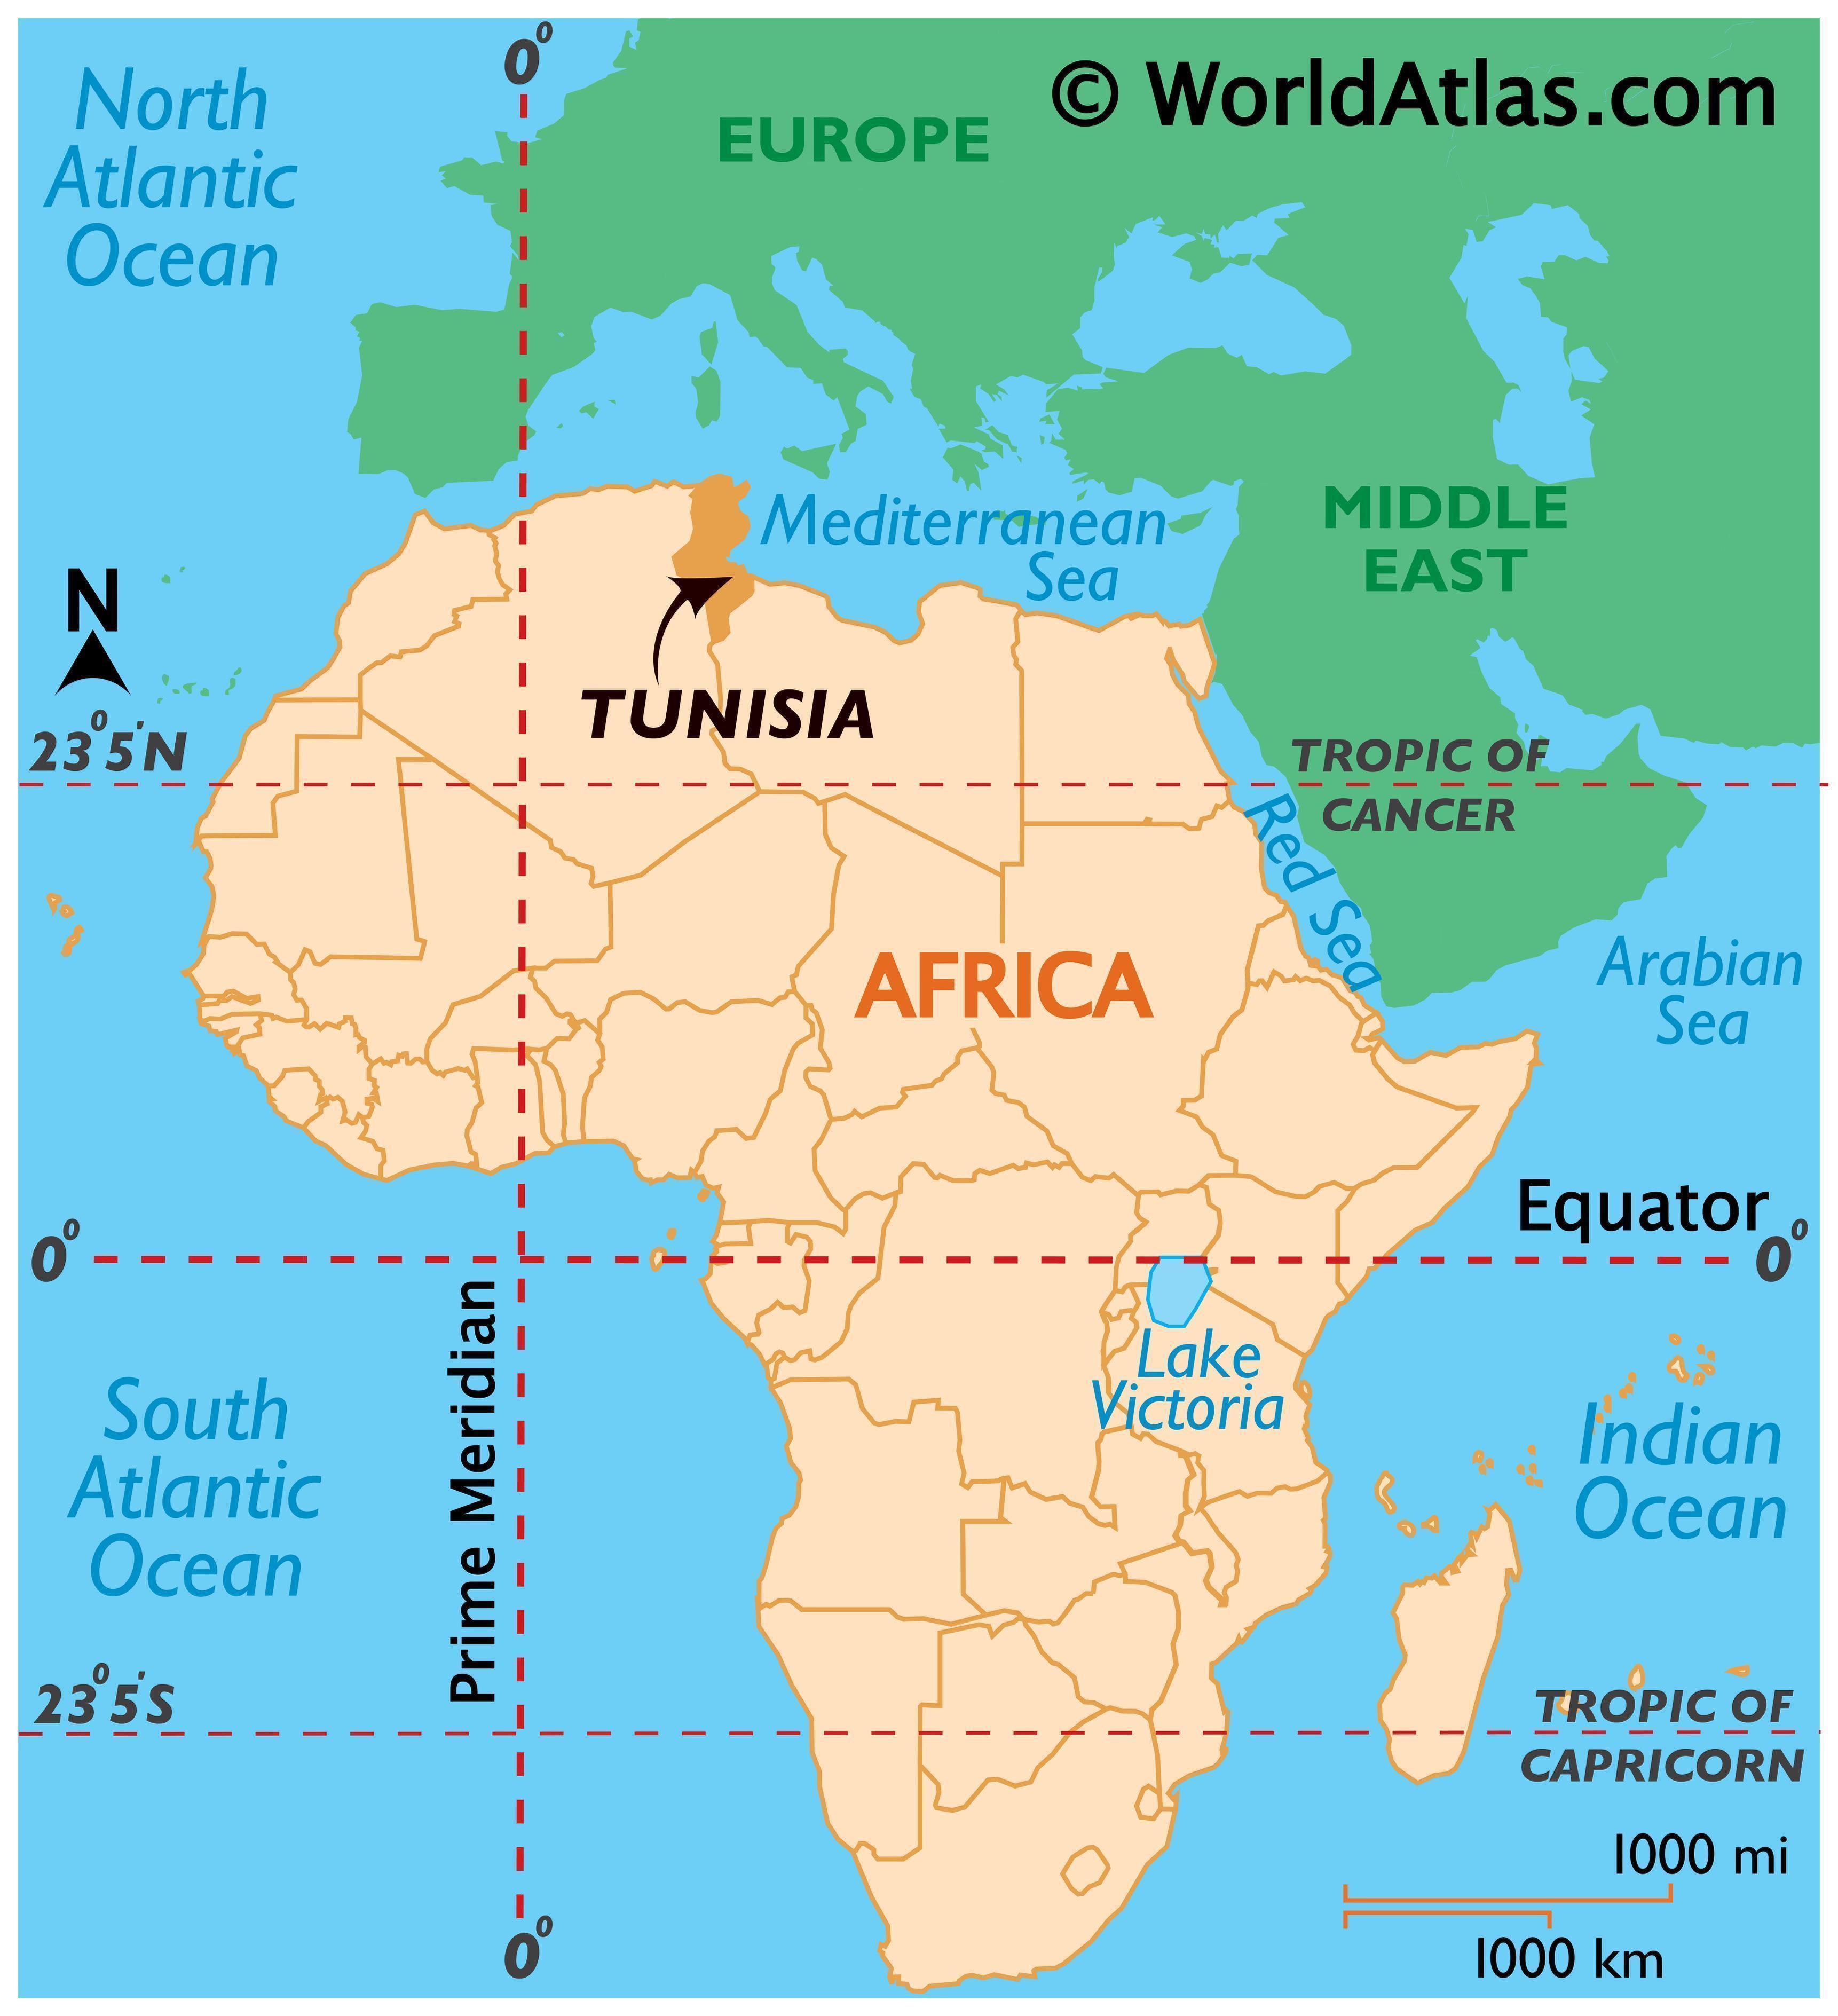 Тунис на карте мира